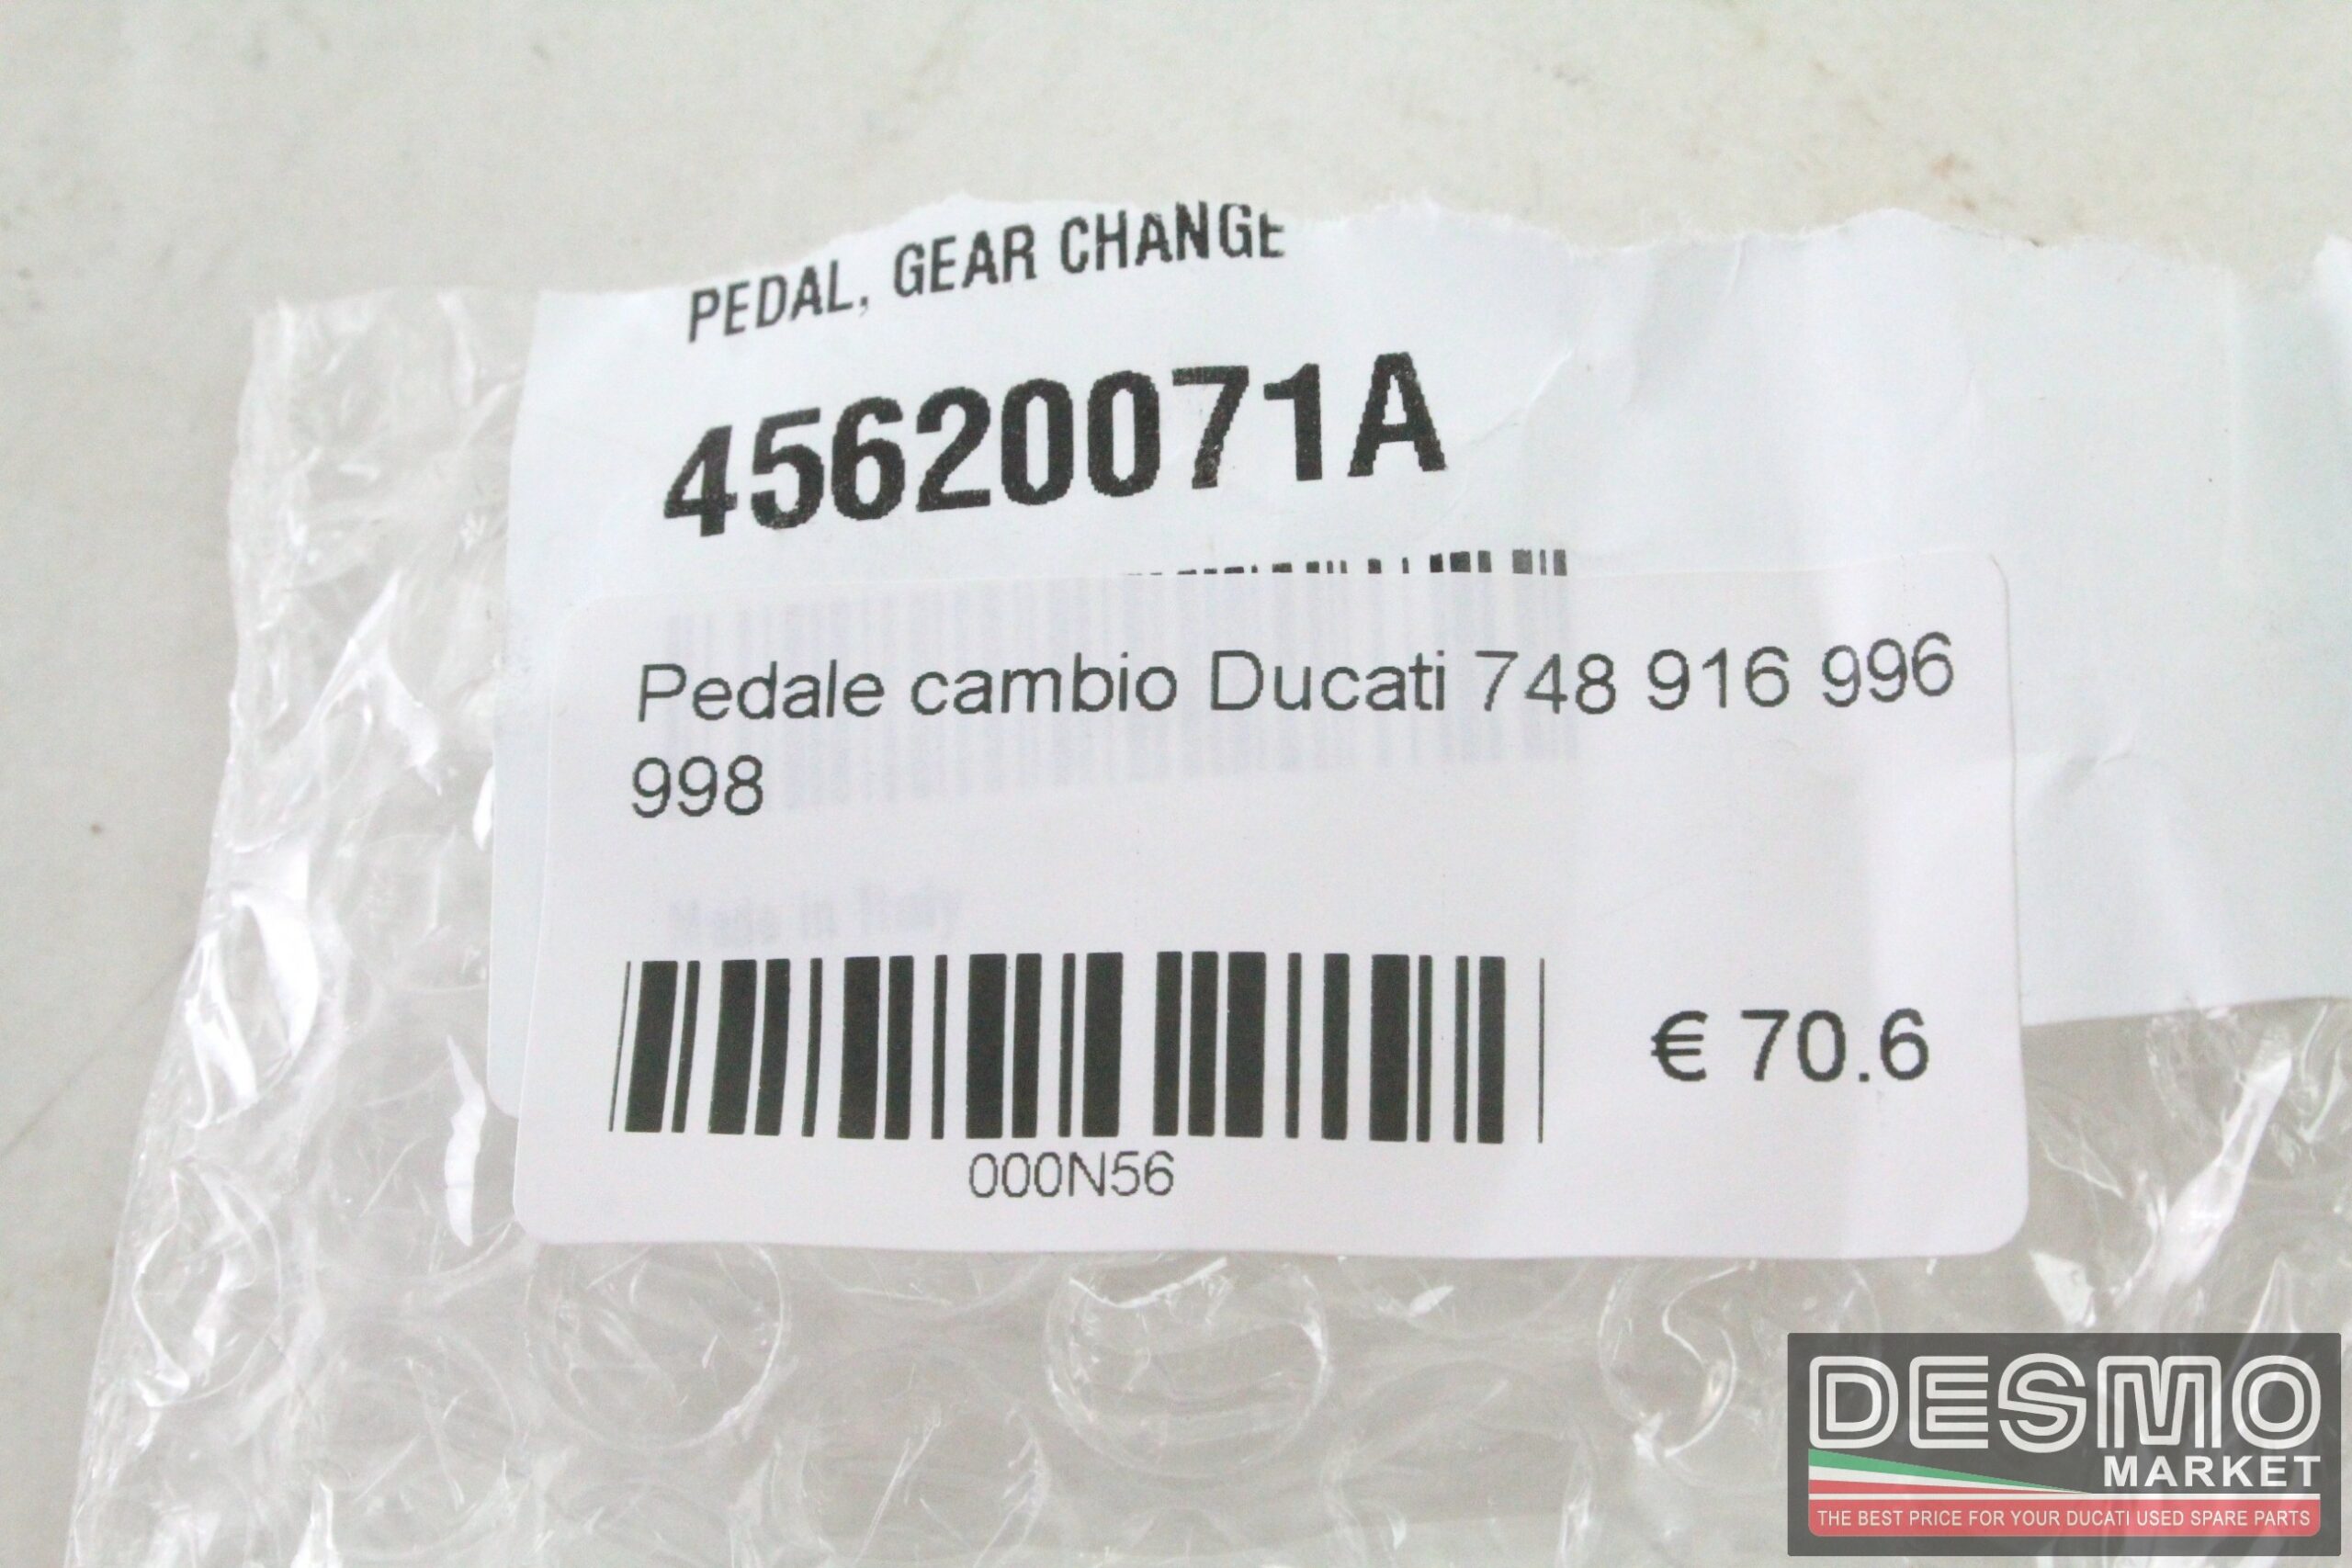 Pedale cambio Ducati SBK 748 916 996 998 SS 600 750 900